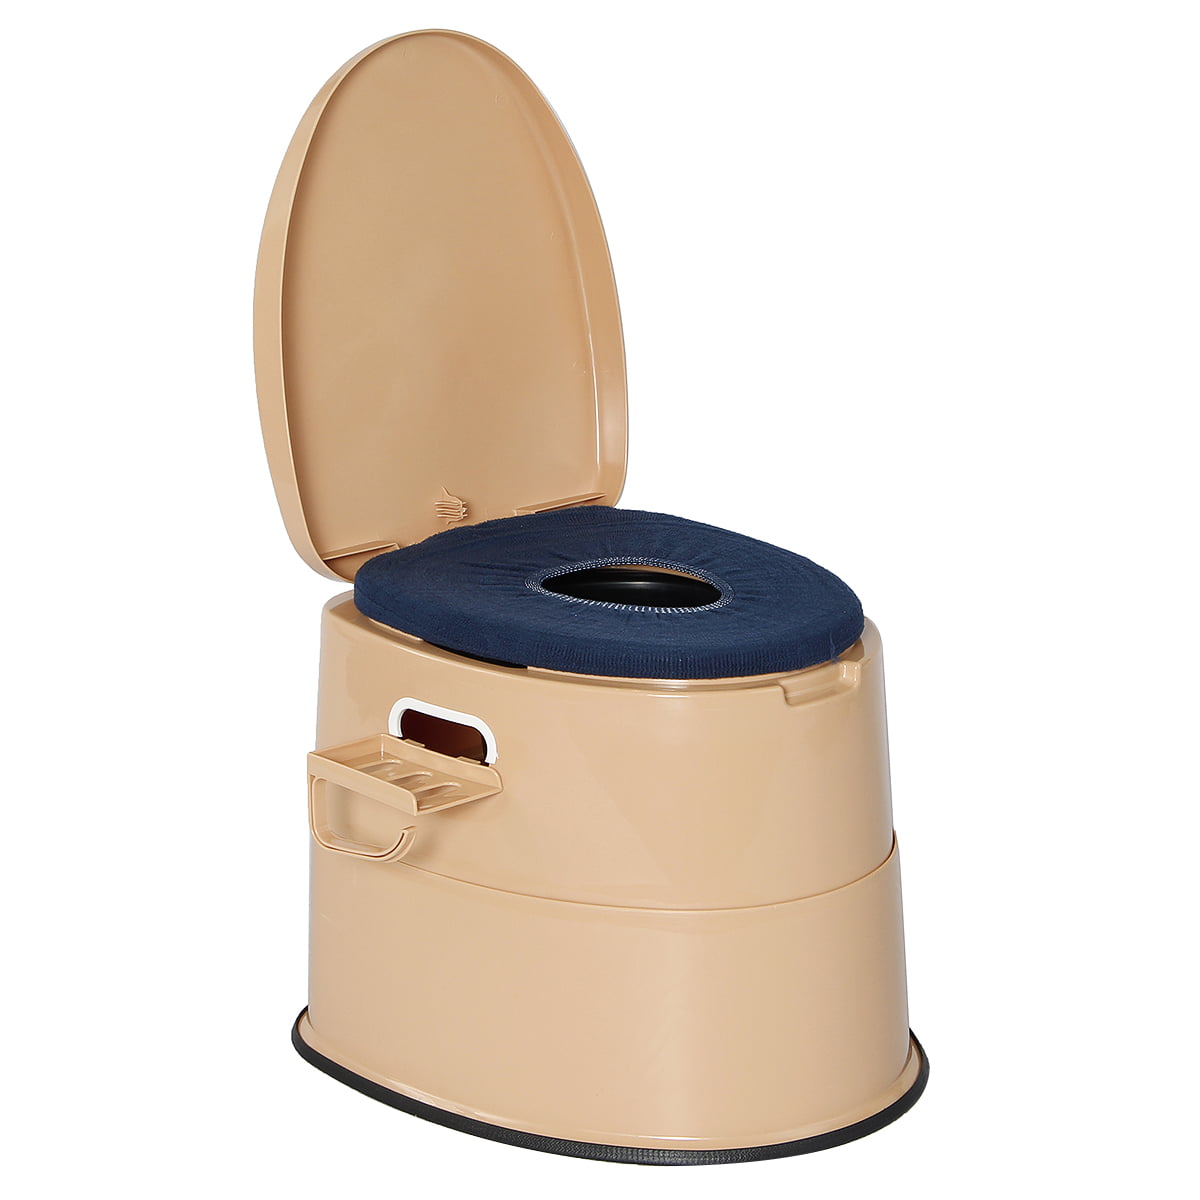 portable potty travel toilet